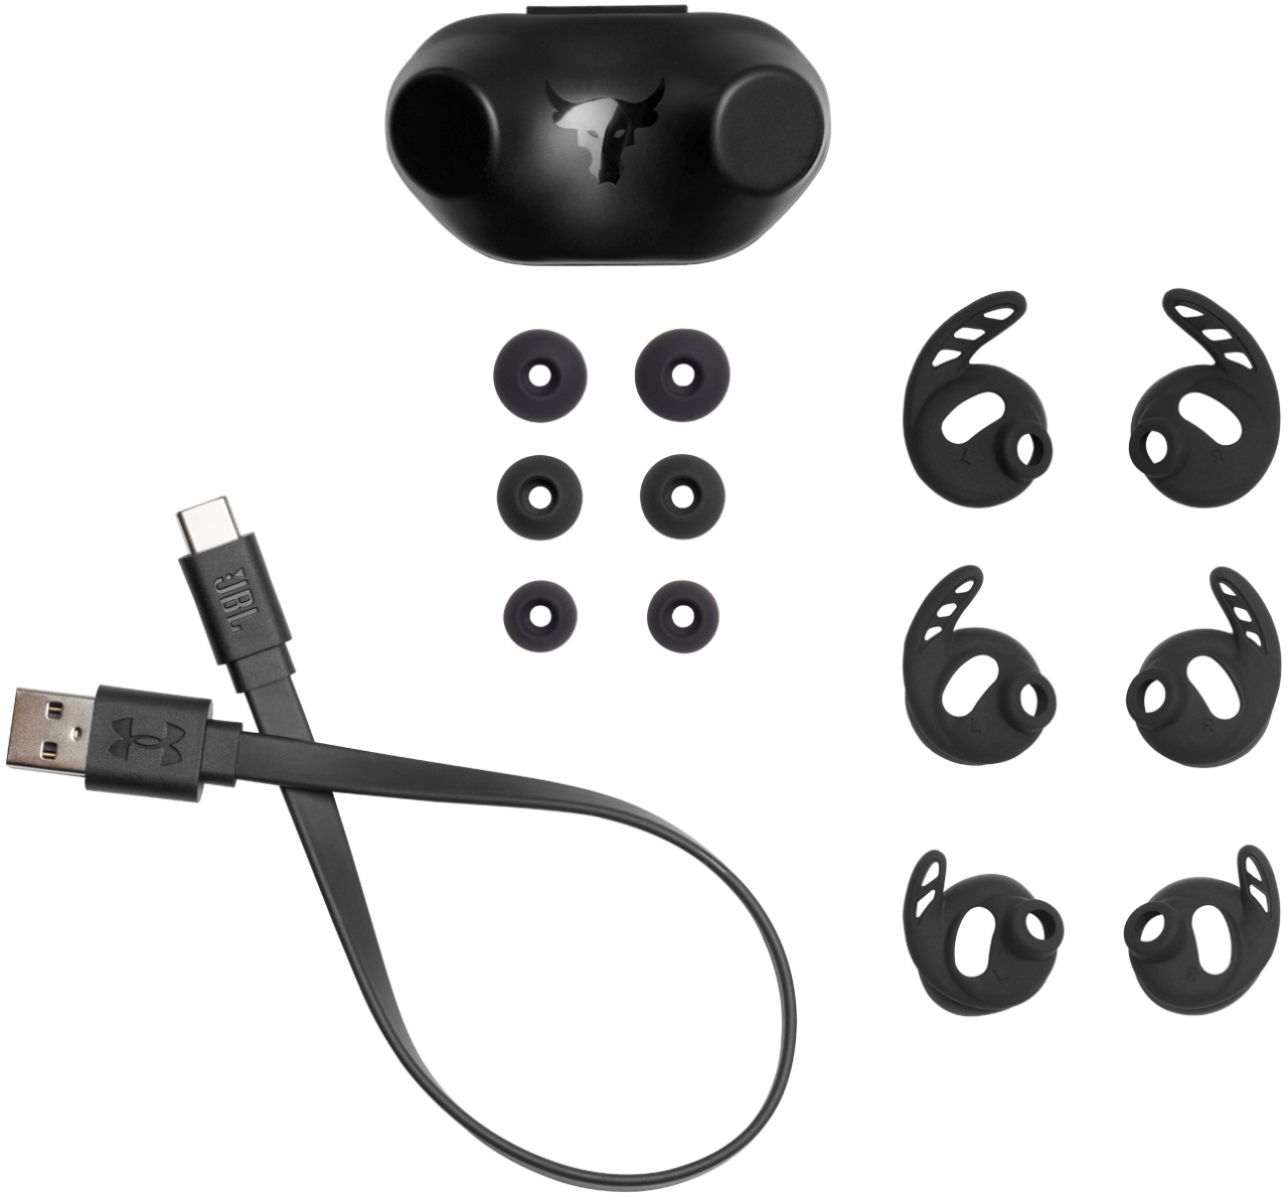 JBL - Under Armour Project Rock True Wireless X Sport In-Ear Headphones - Black